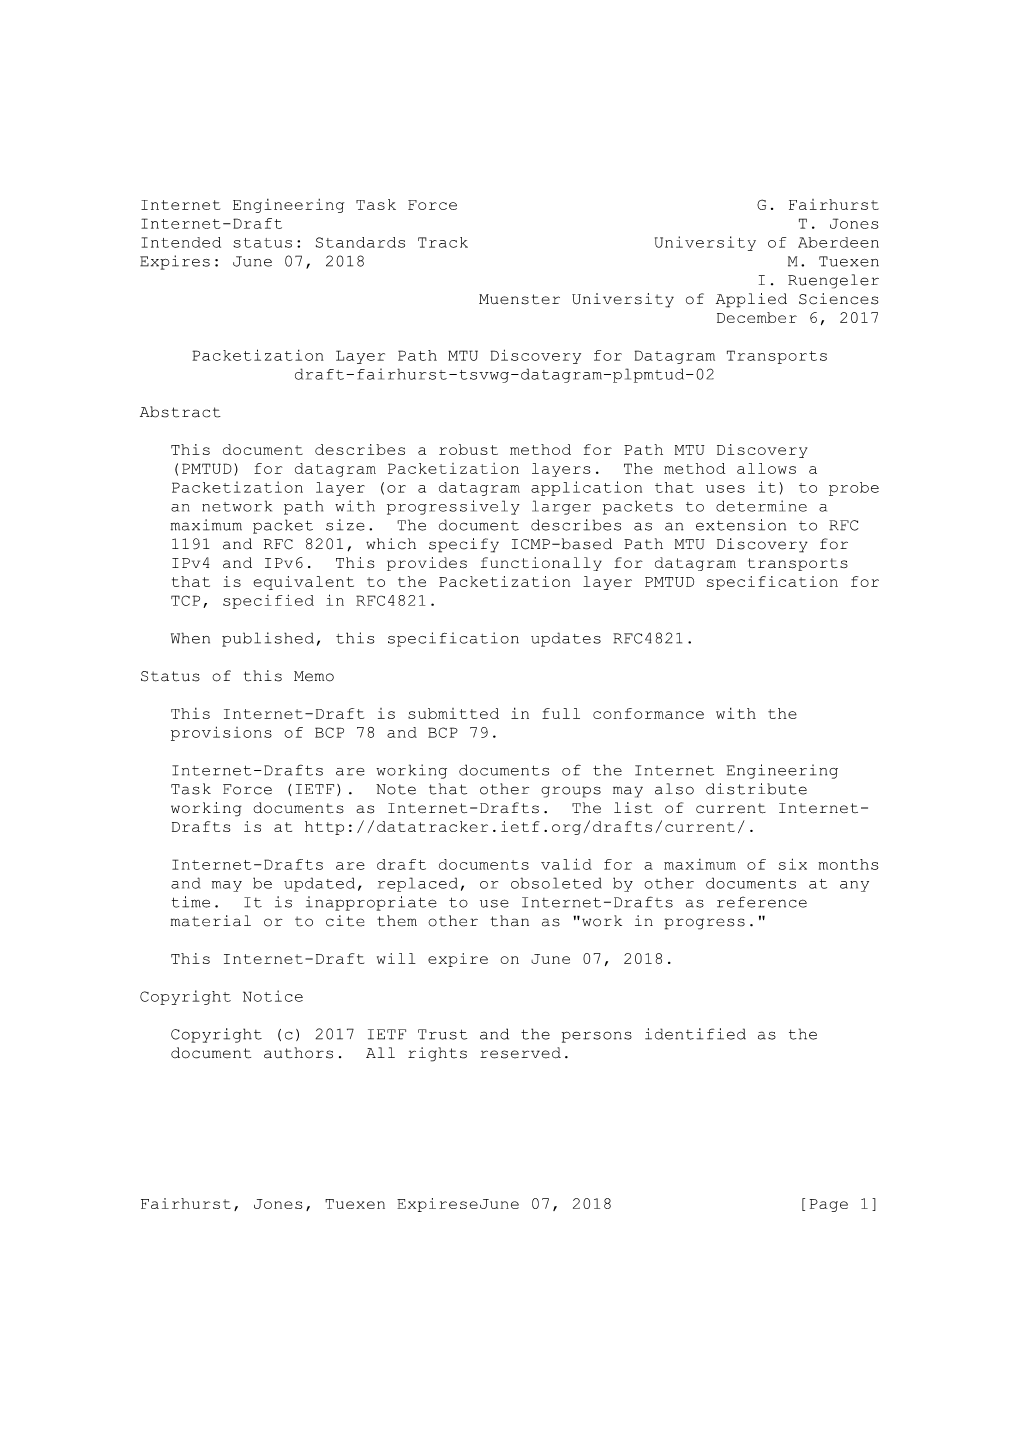 Internet Engineering Task Force G. Fairhurst Internet-Draft T. Jones Intended Status: Standards Track University of Aberdeen Expires: June 07, 2018 M